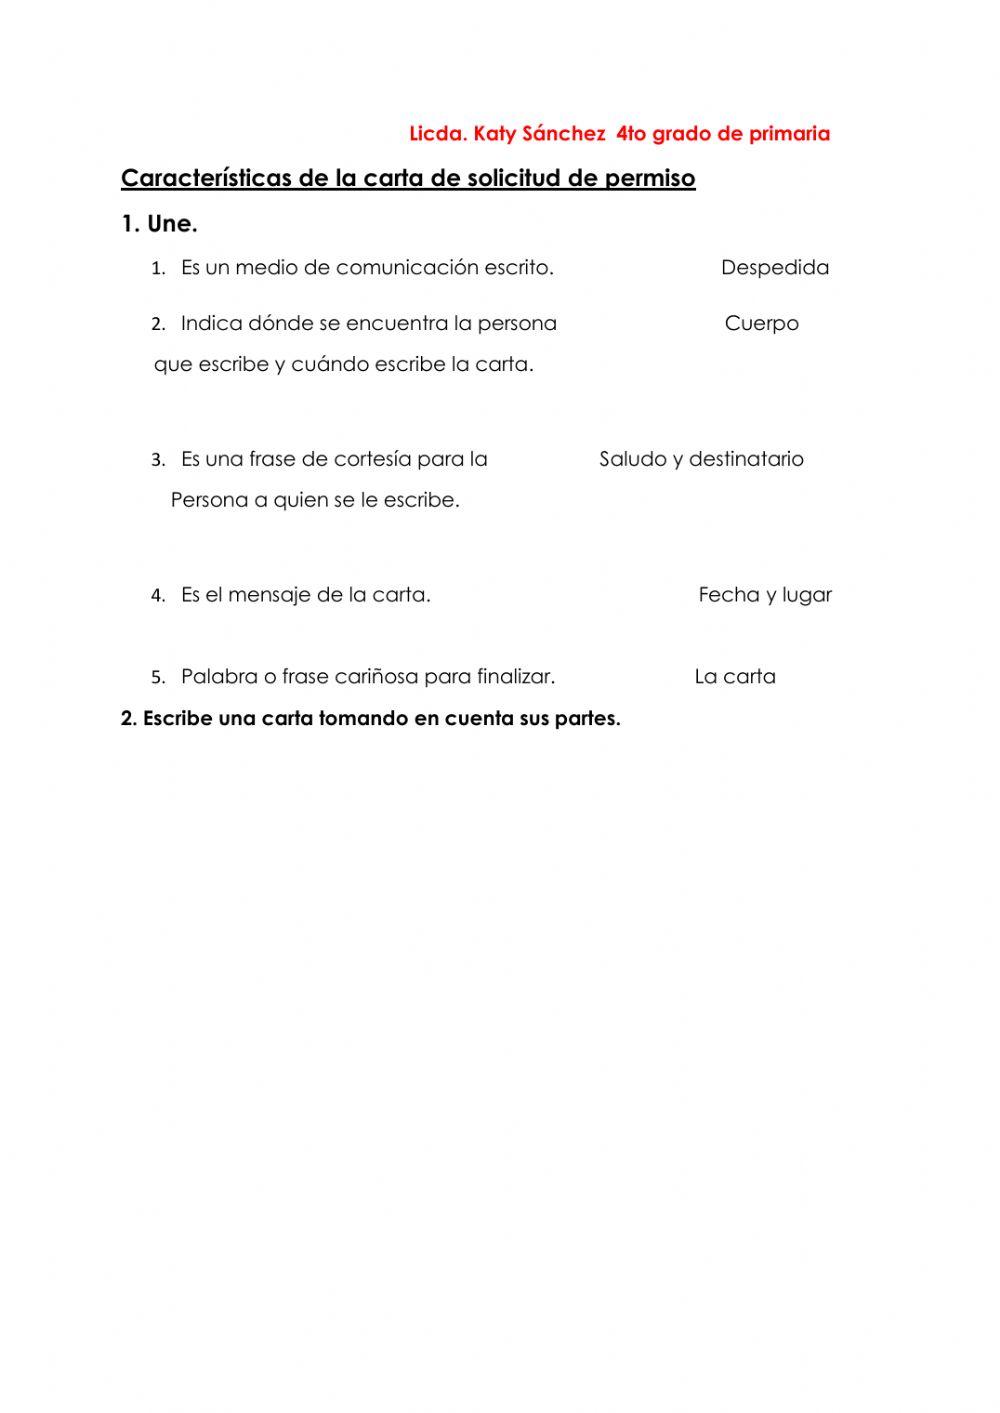 Características de la carta de solicitud de permiso